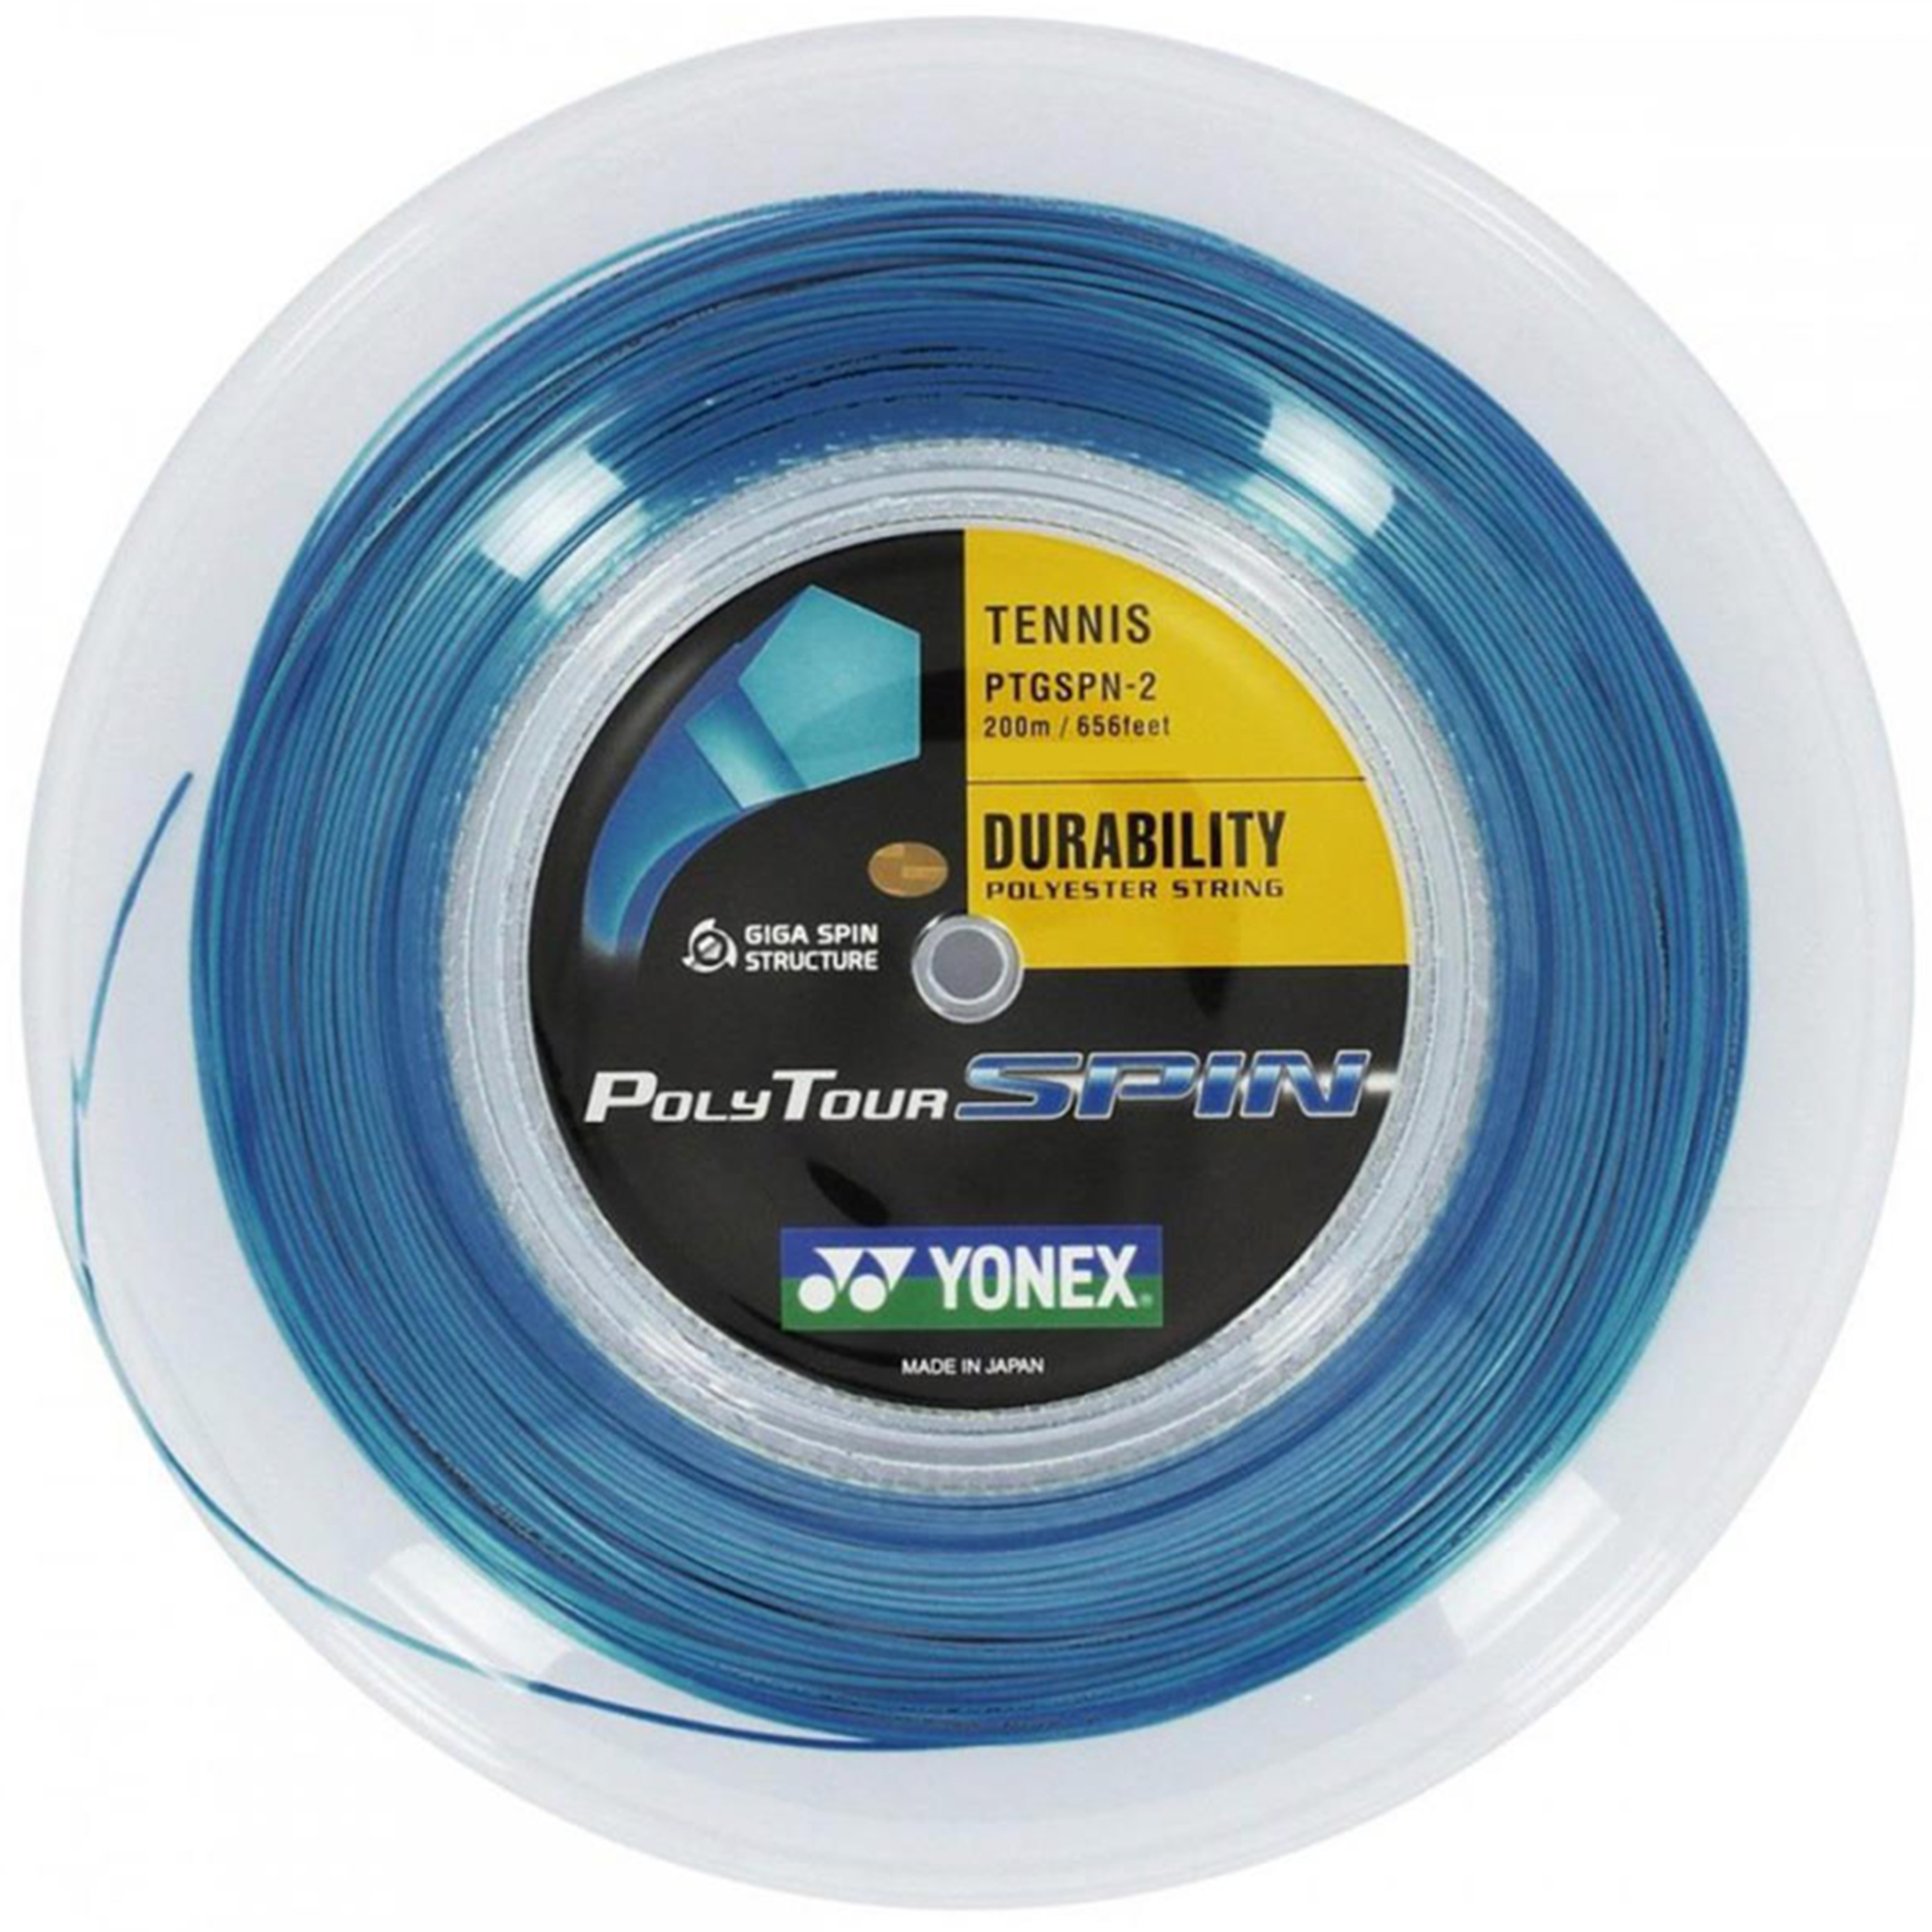 Yonex Poly Tour Spin 1.25mm 200m reel